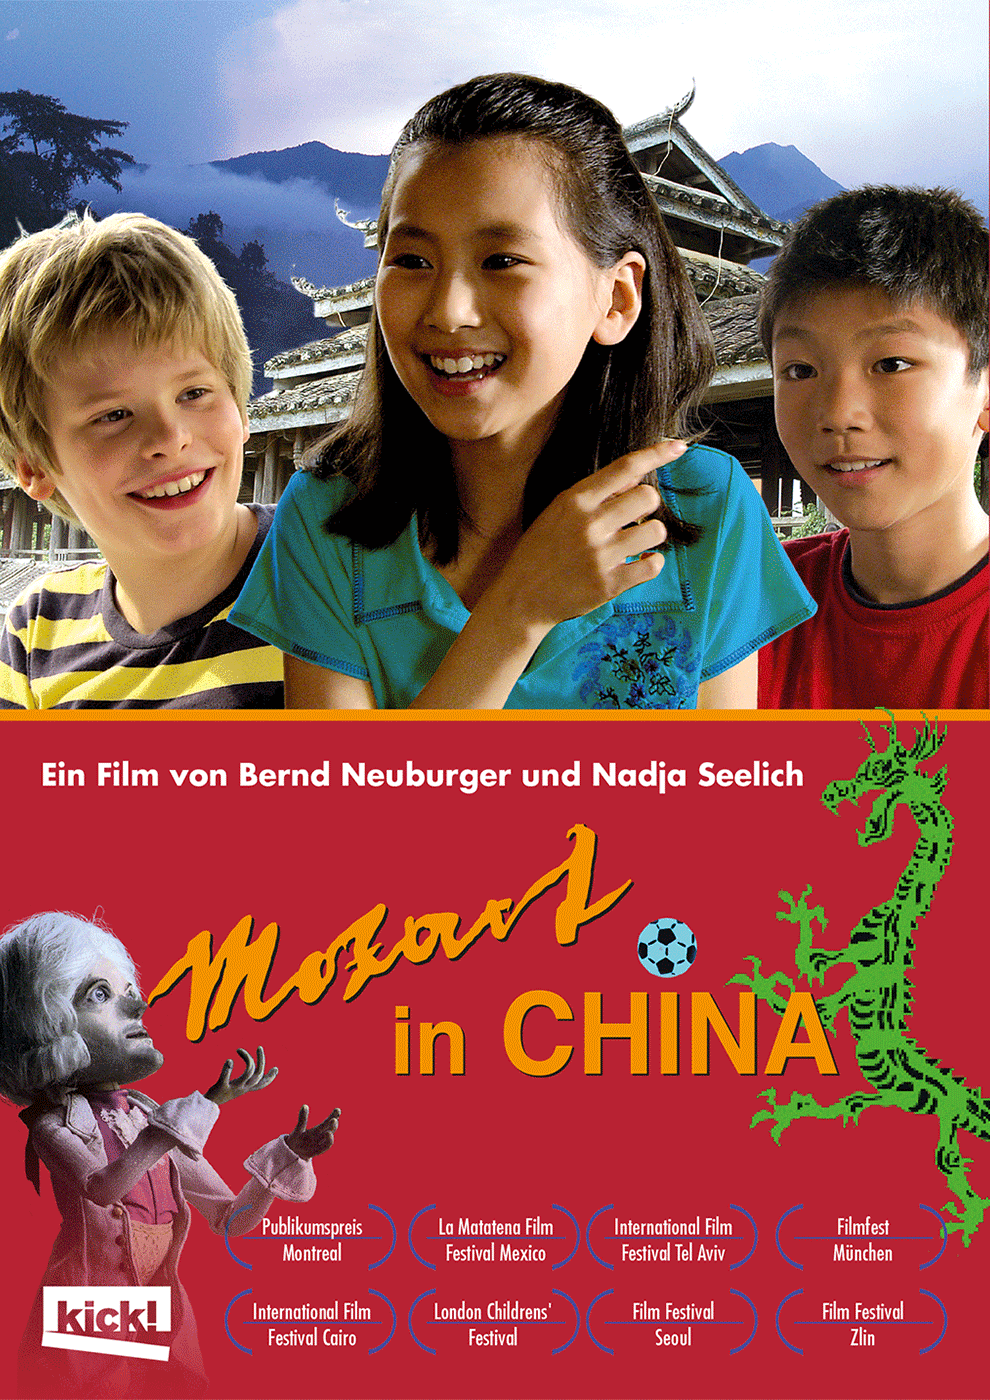 MOZART IN CHINA Ein Film von Bernd Neuburger & Nadja Seelich